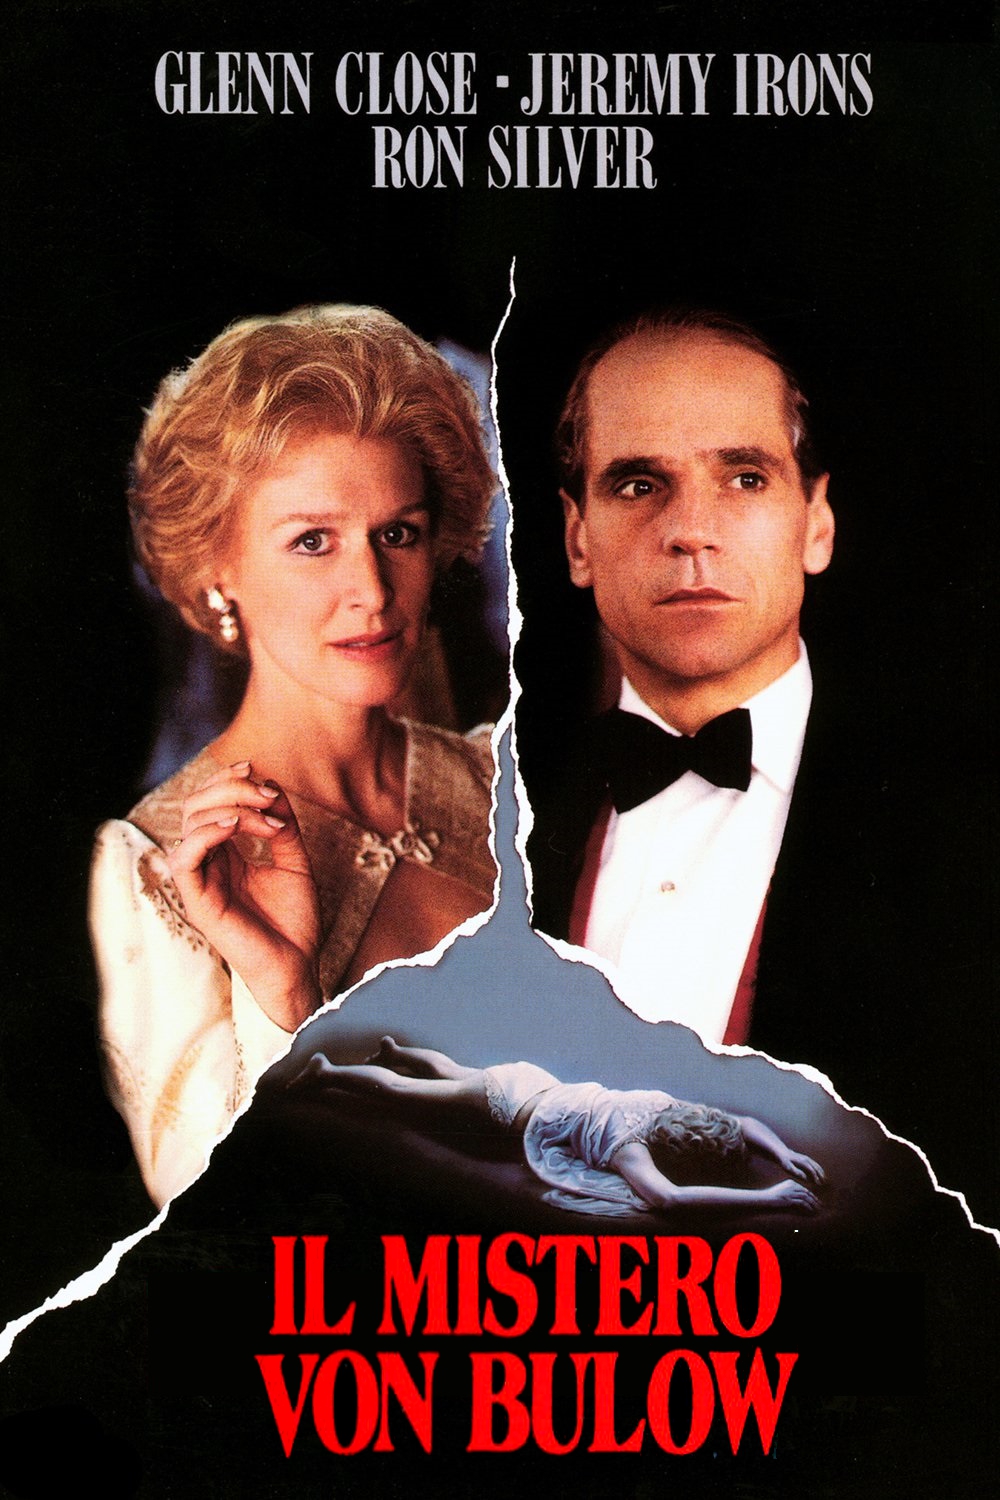 Il mistero von Bulow [HD] (1990)